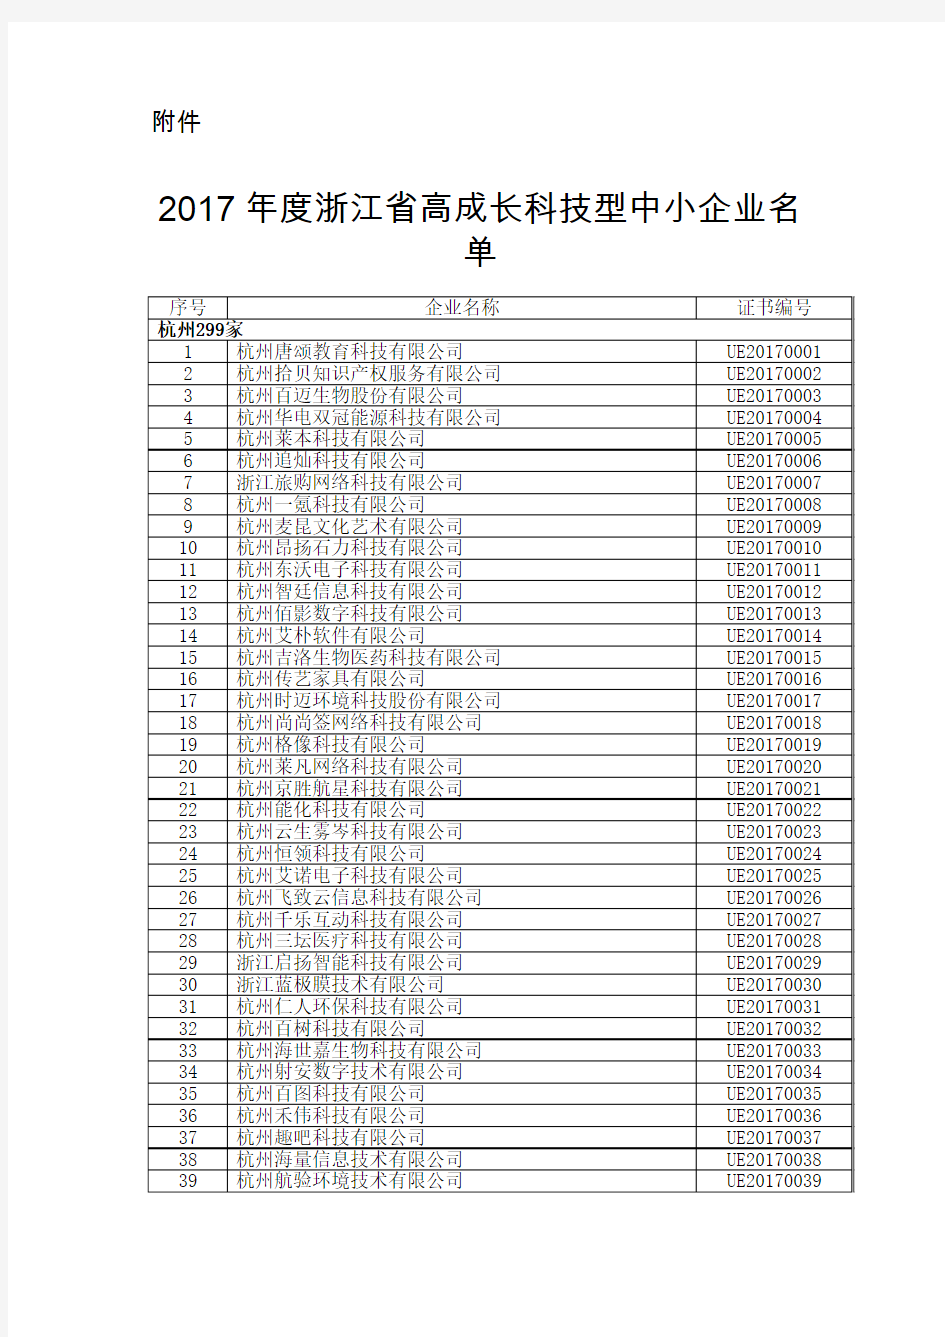 2017年度浙江省高成长科技型中小企业名单